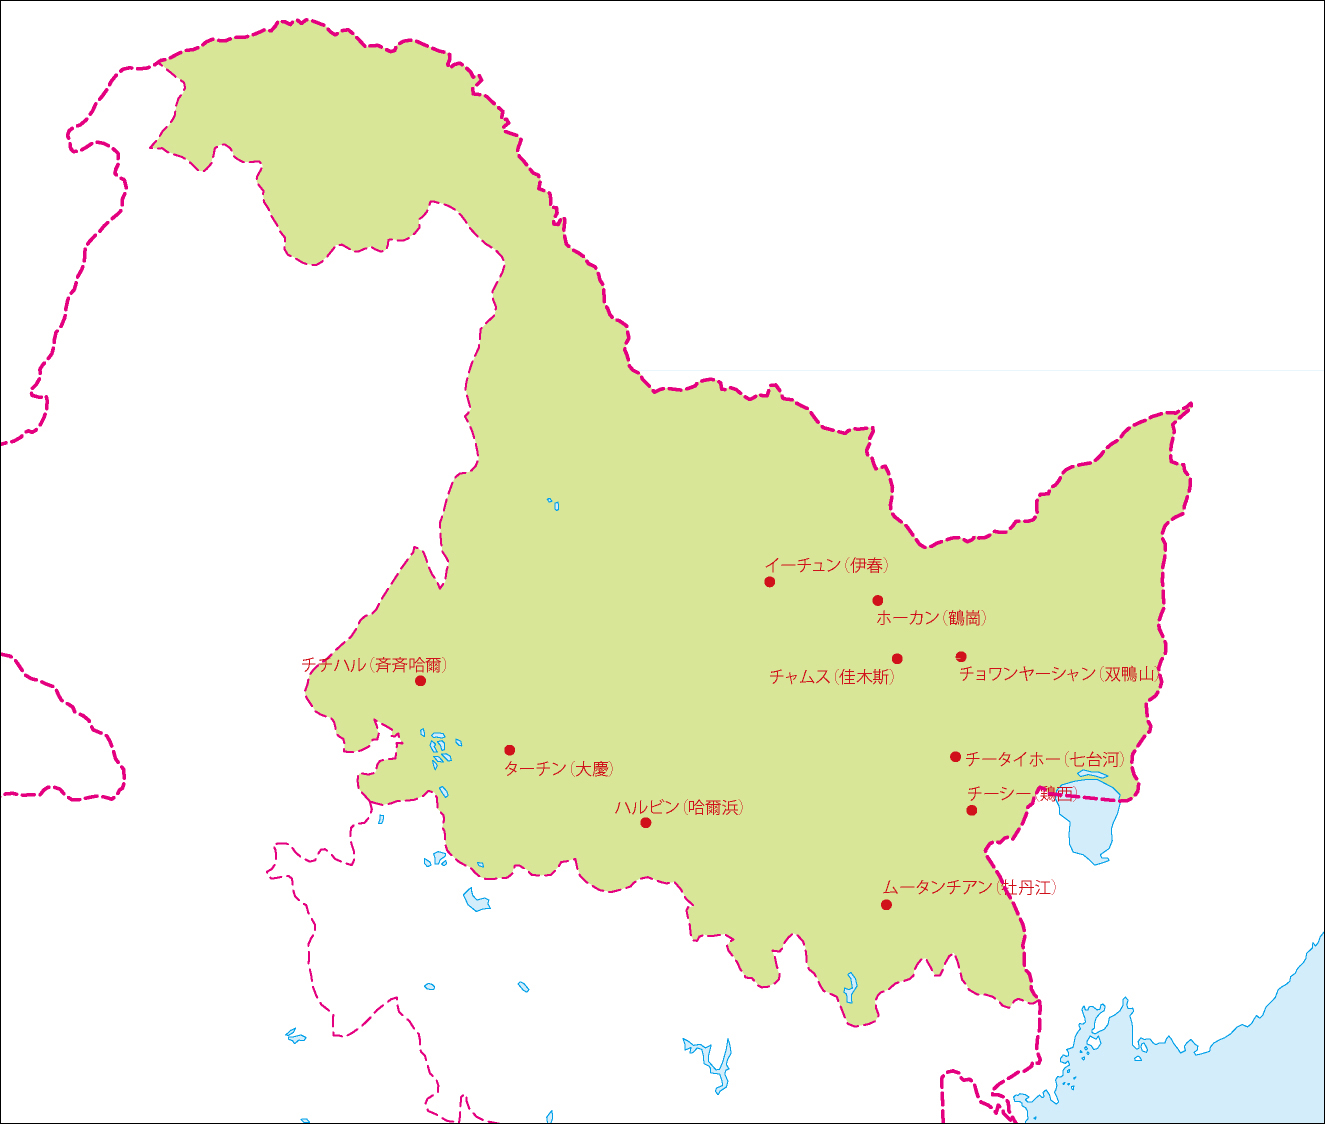 黒竜江省地図(主な都市あり)のフリーデータの画像